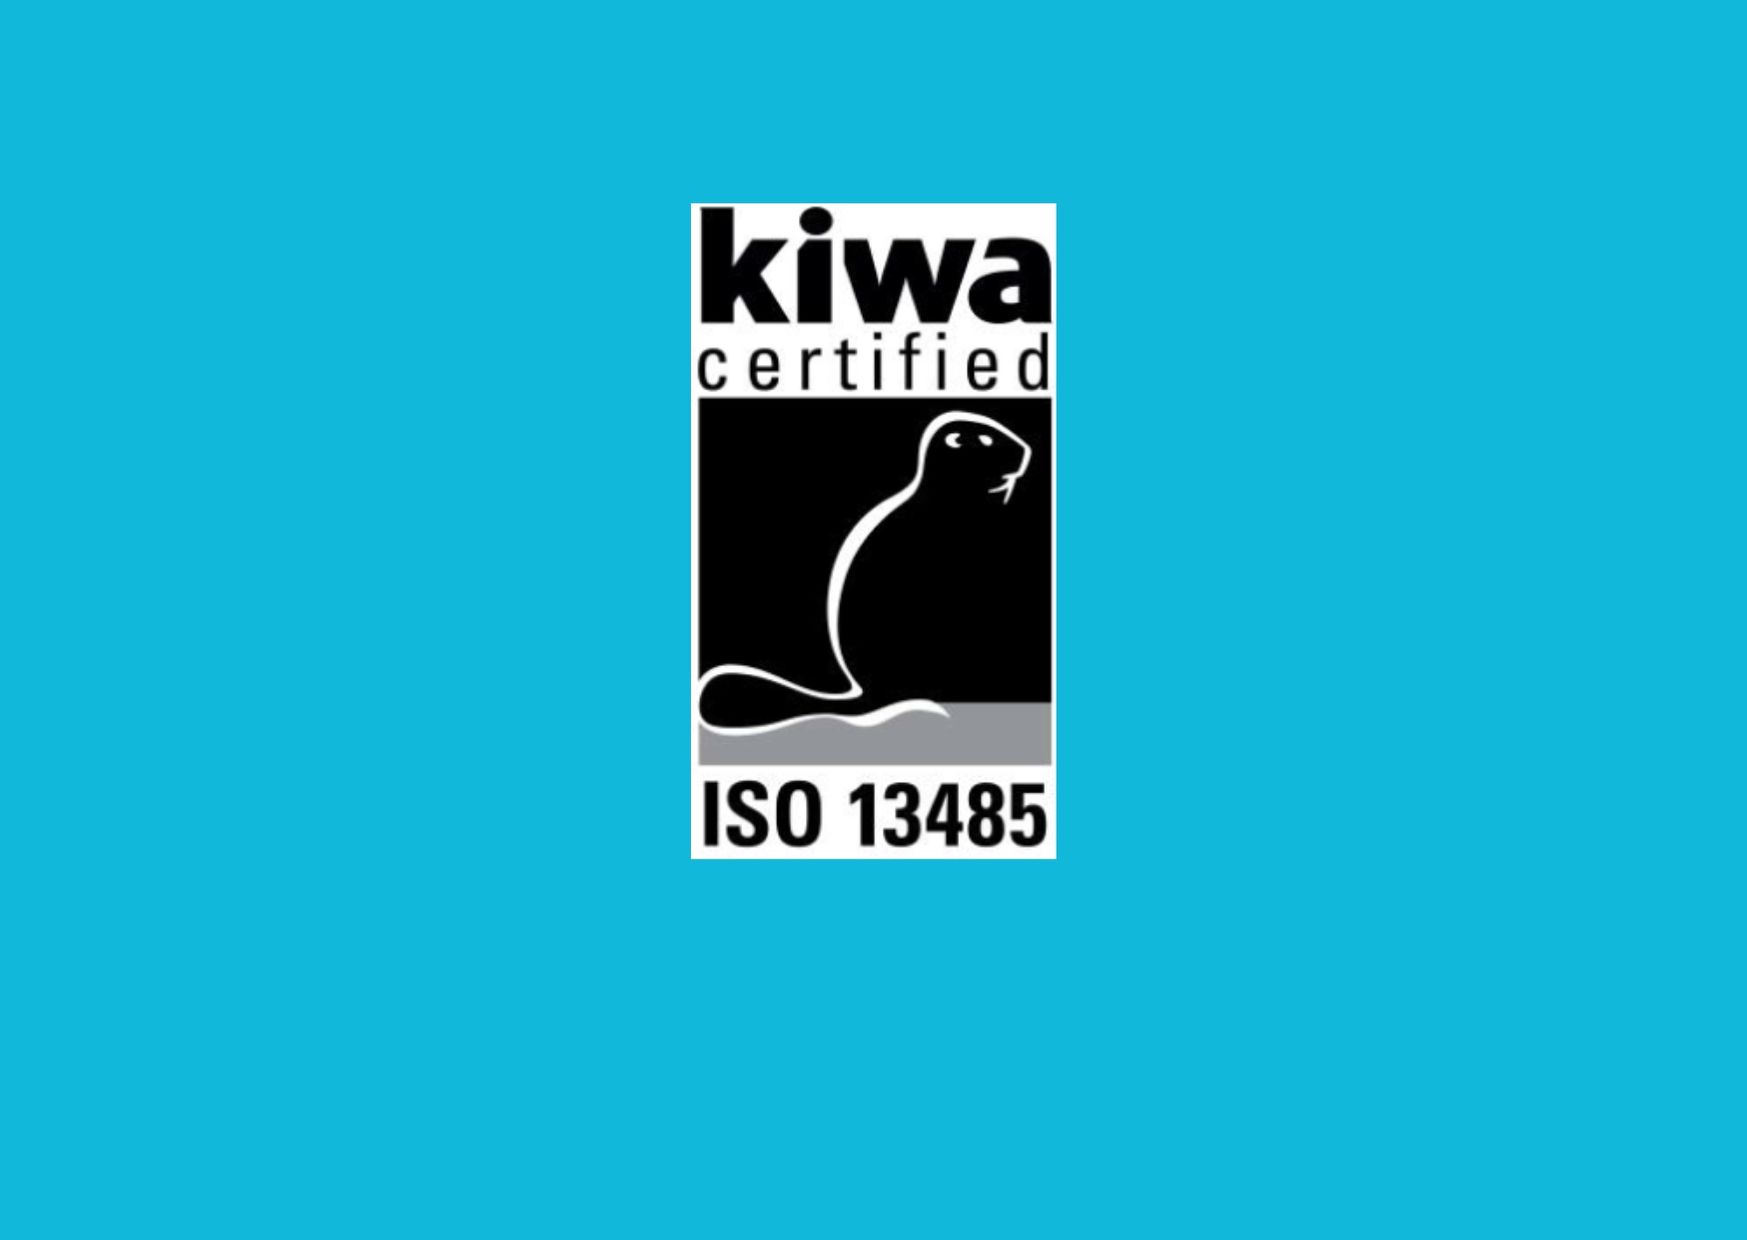 ISO 13485 sertifiointi Esko Systemsille - Esko Systems